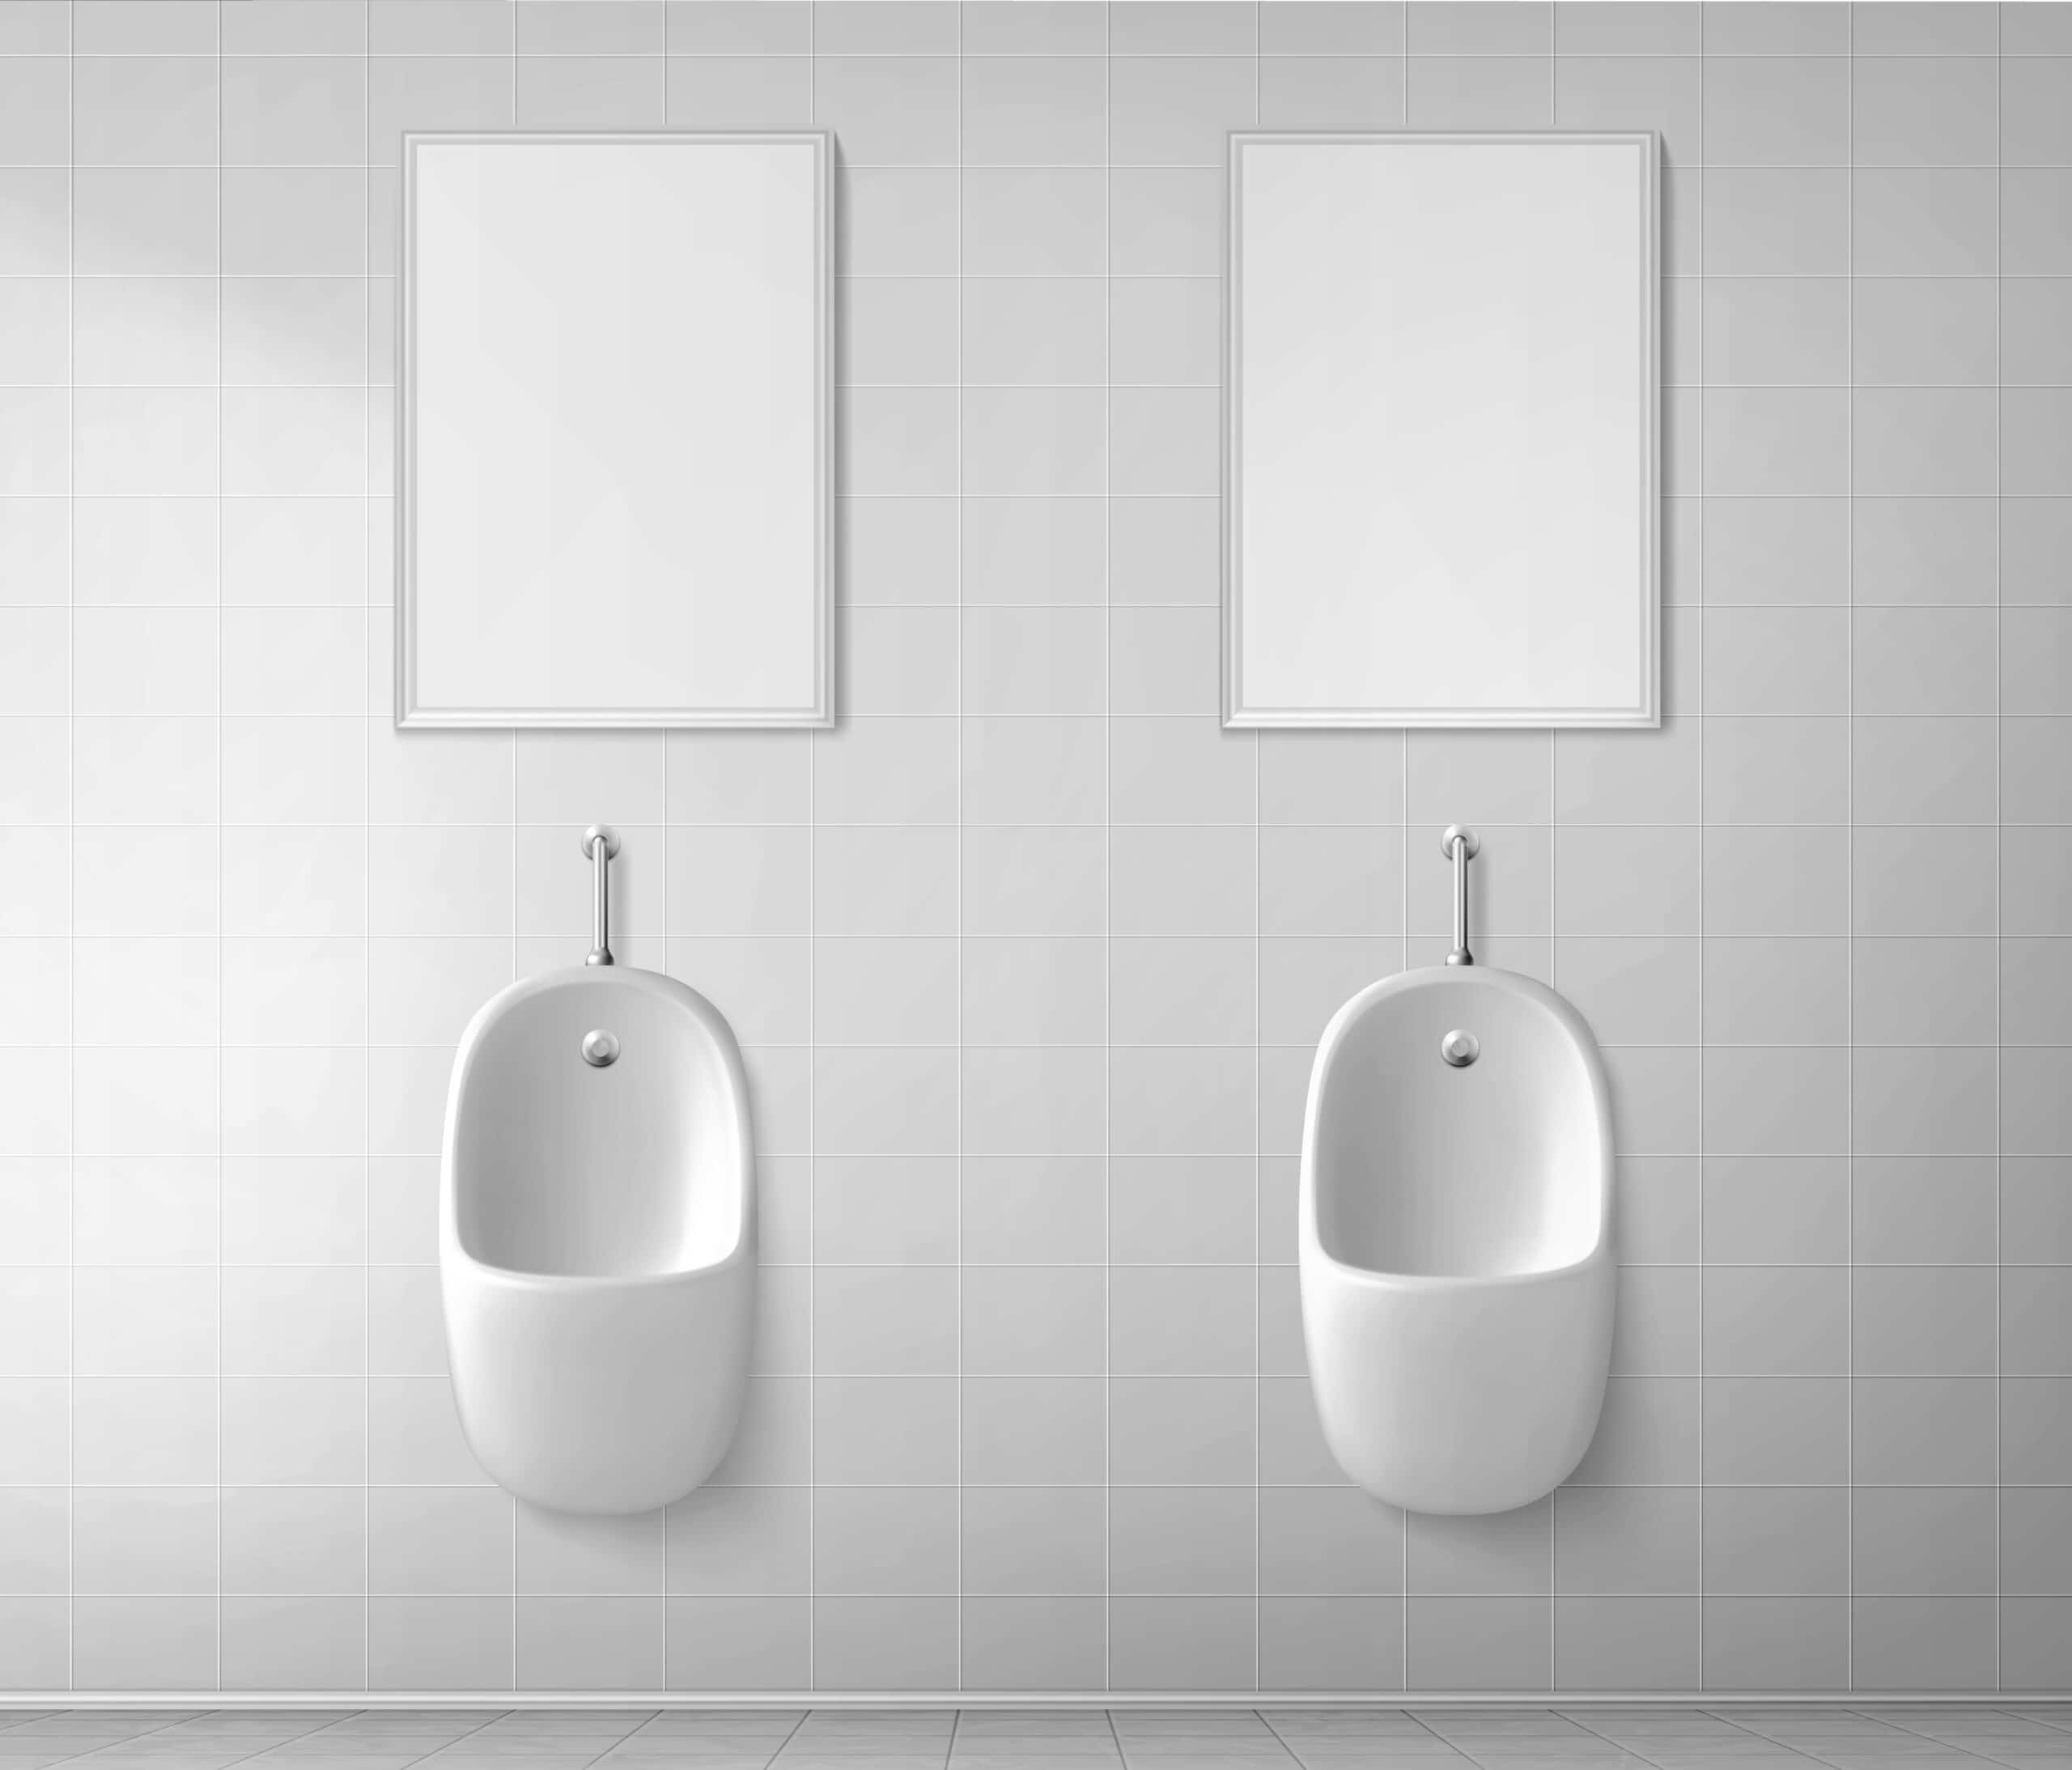 Urinals for bathrooms in Mumbai